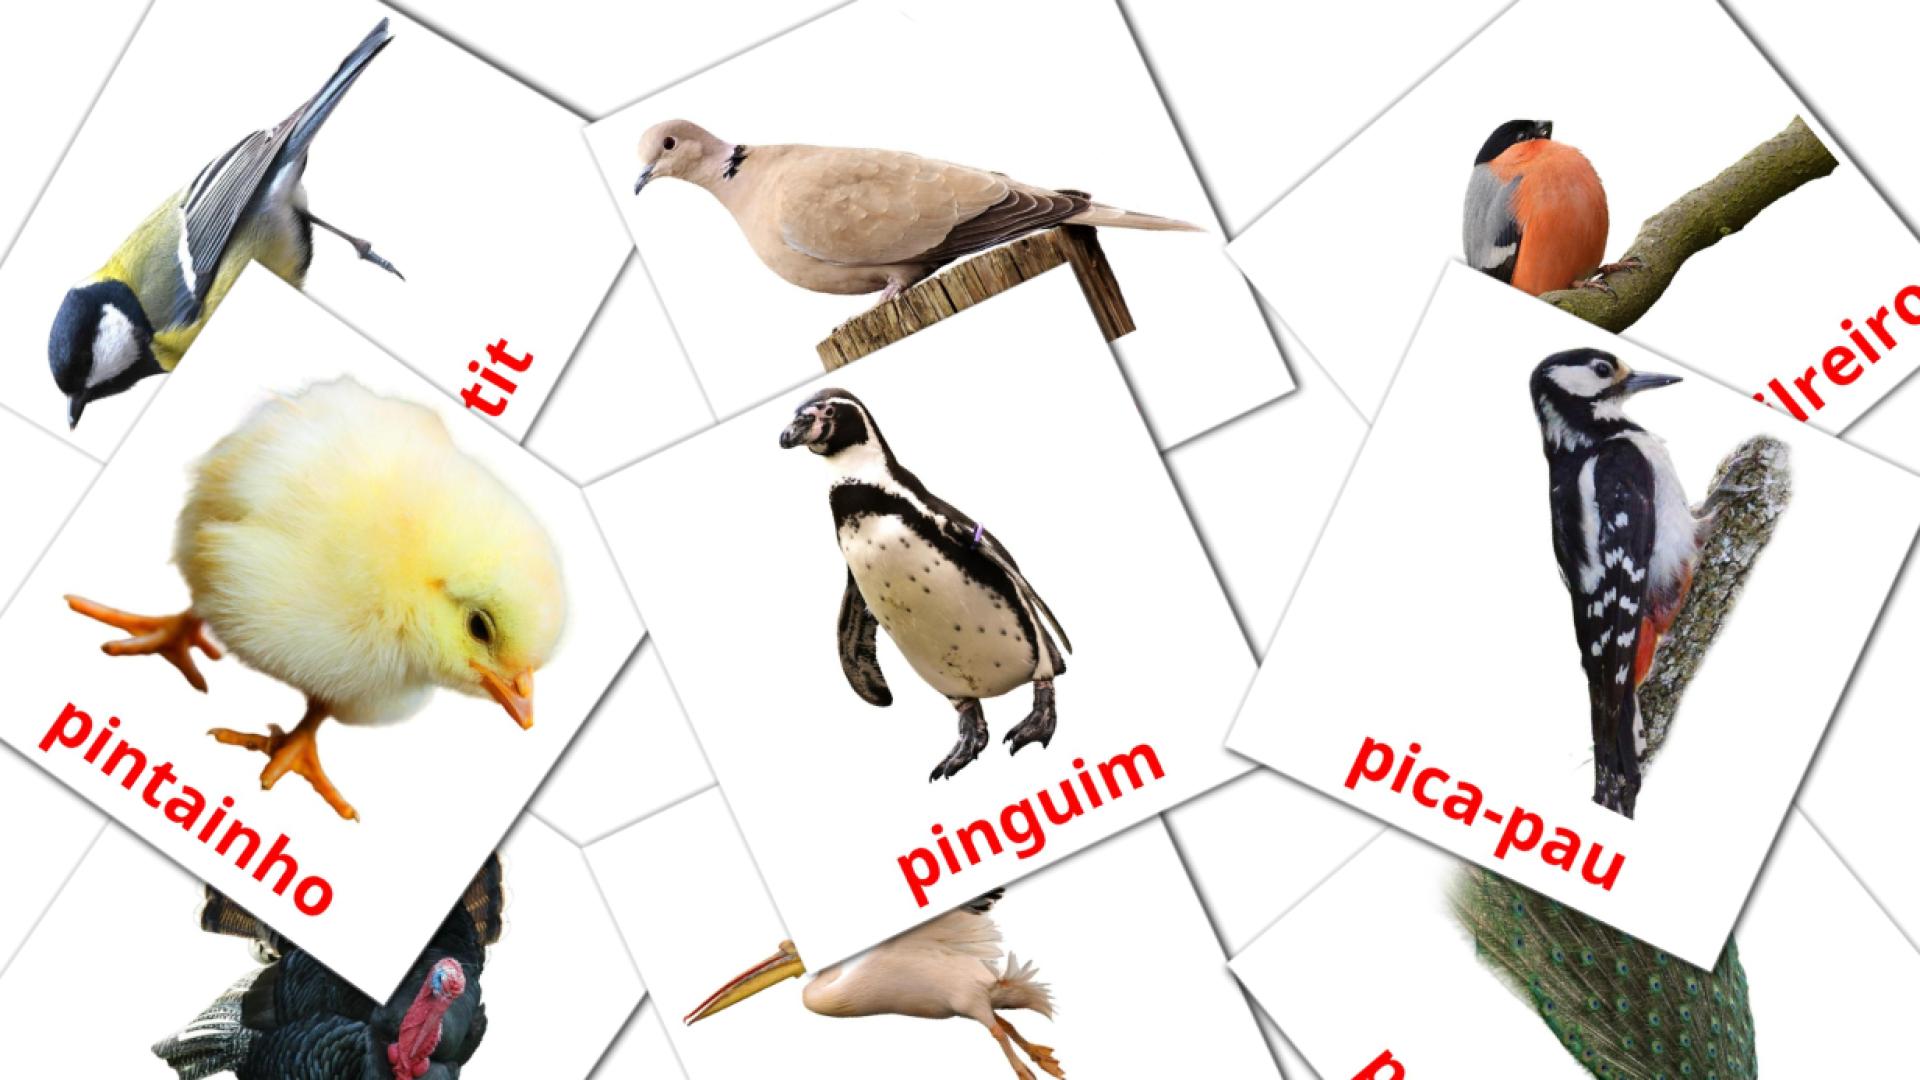 Fiches de vocabulaire portugaises sur Aves